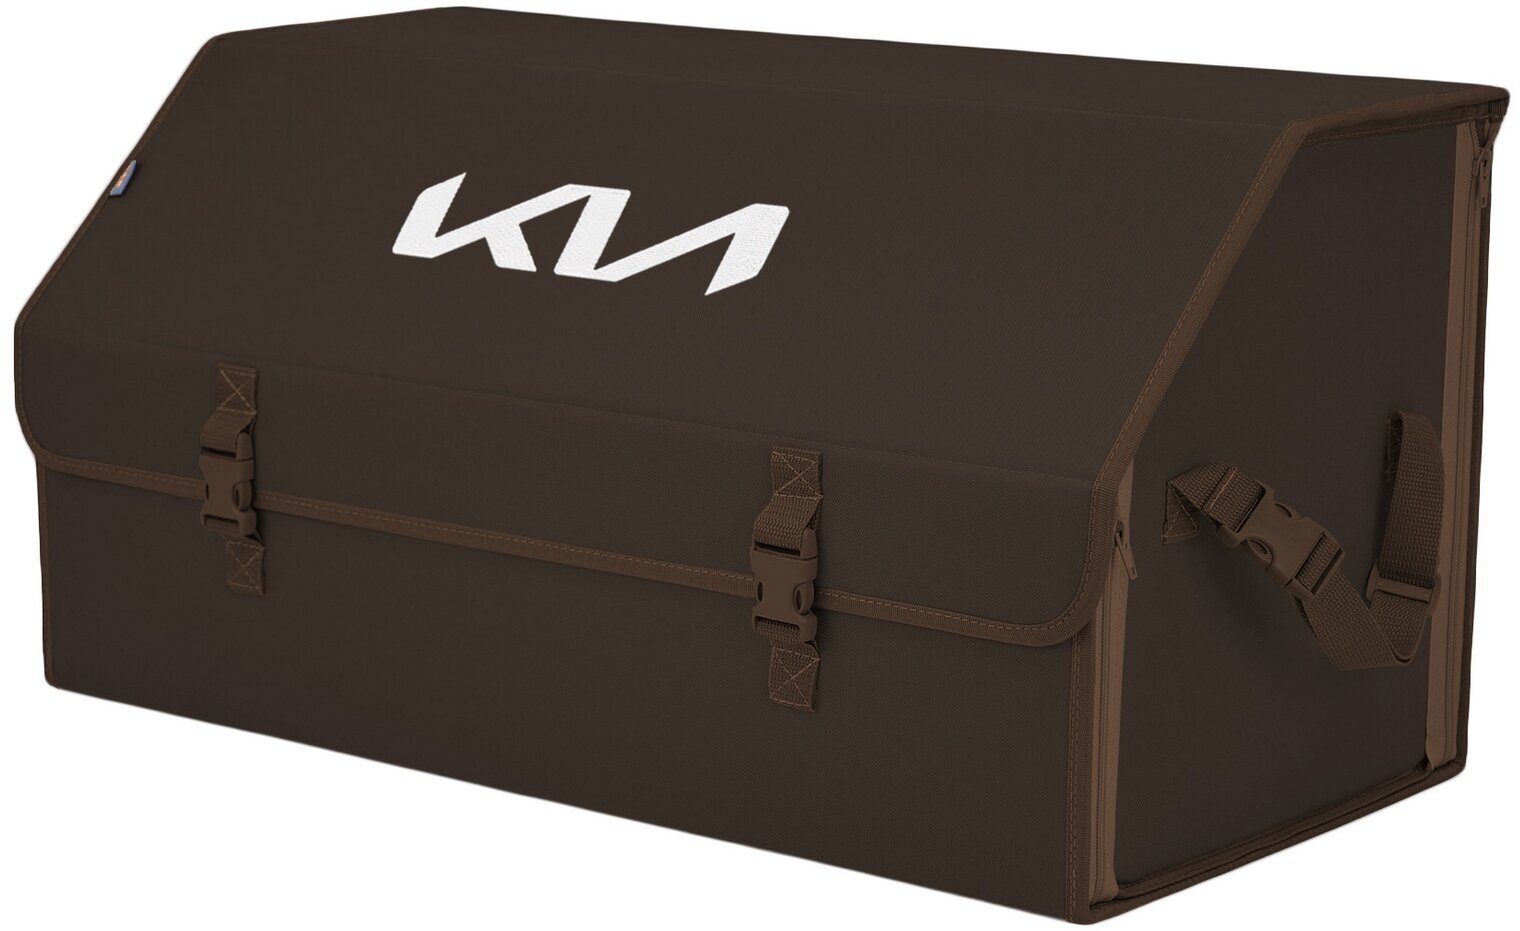 Органайзер-саквояж в багажник "Союз" (размер XL Plus). Цвет: коричневый с вышивкой KIA (КИА).